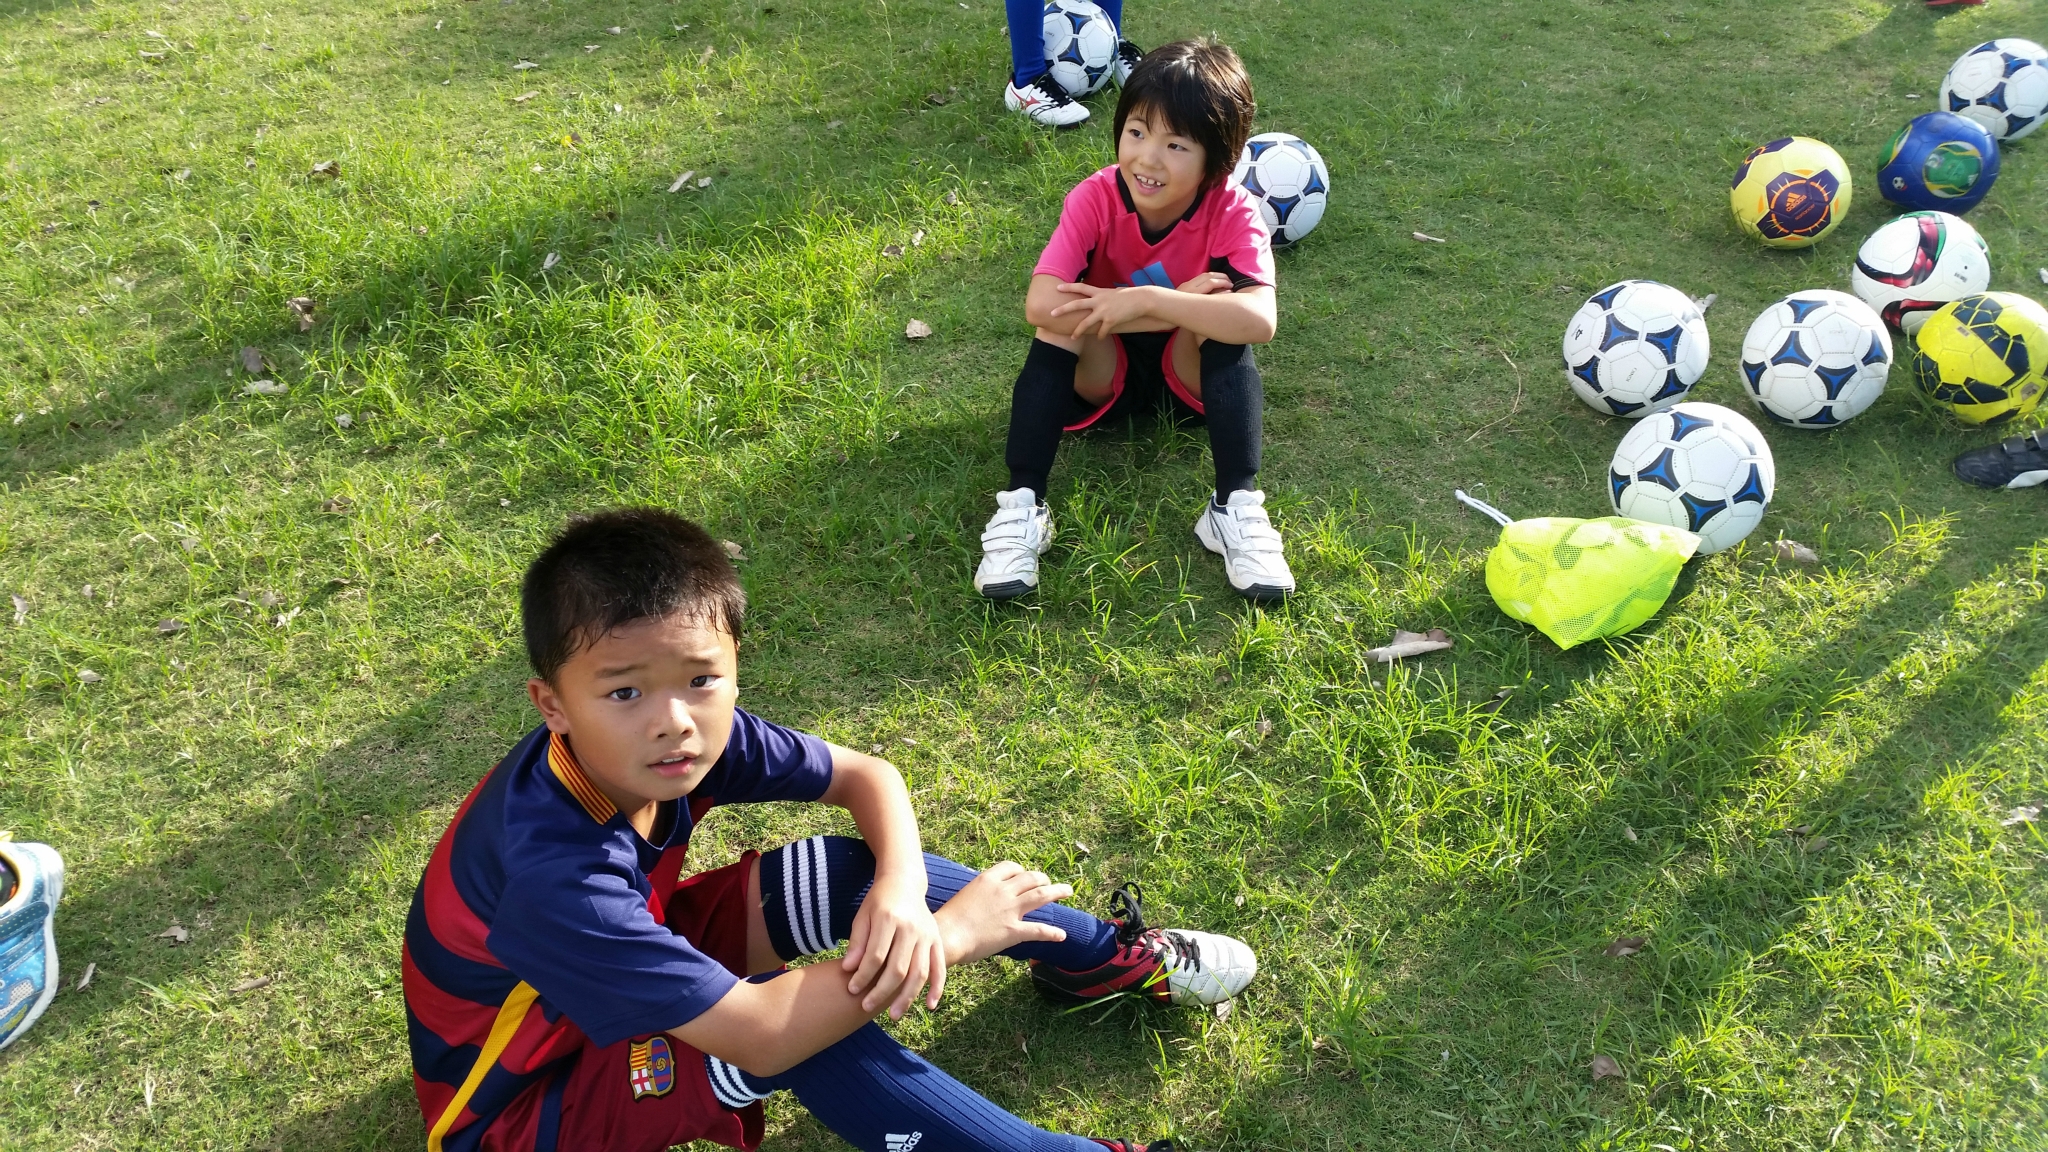 一般社団法人グランフォルティス沖縄活動ブログ 沖縄の子の身長は低い サッカーと身長の関係について